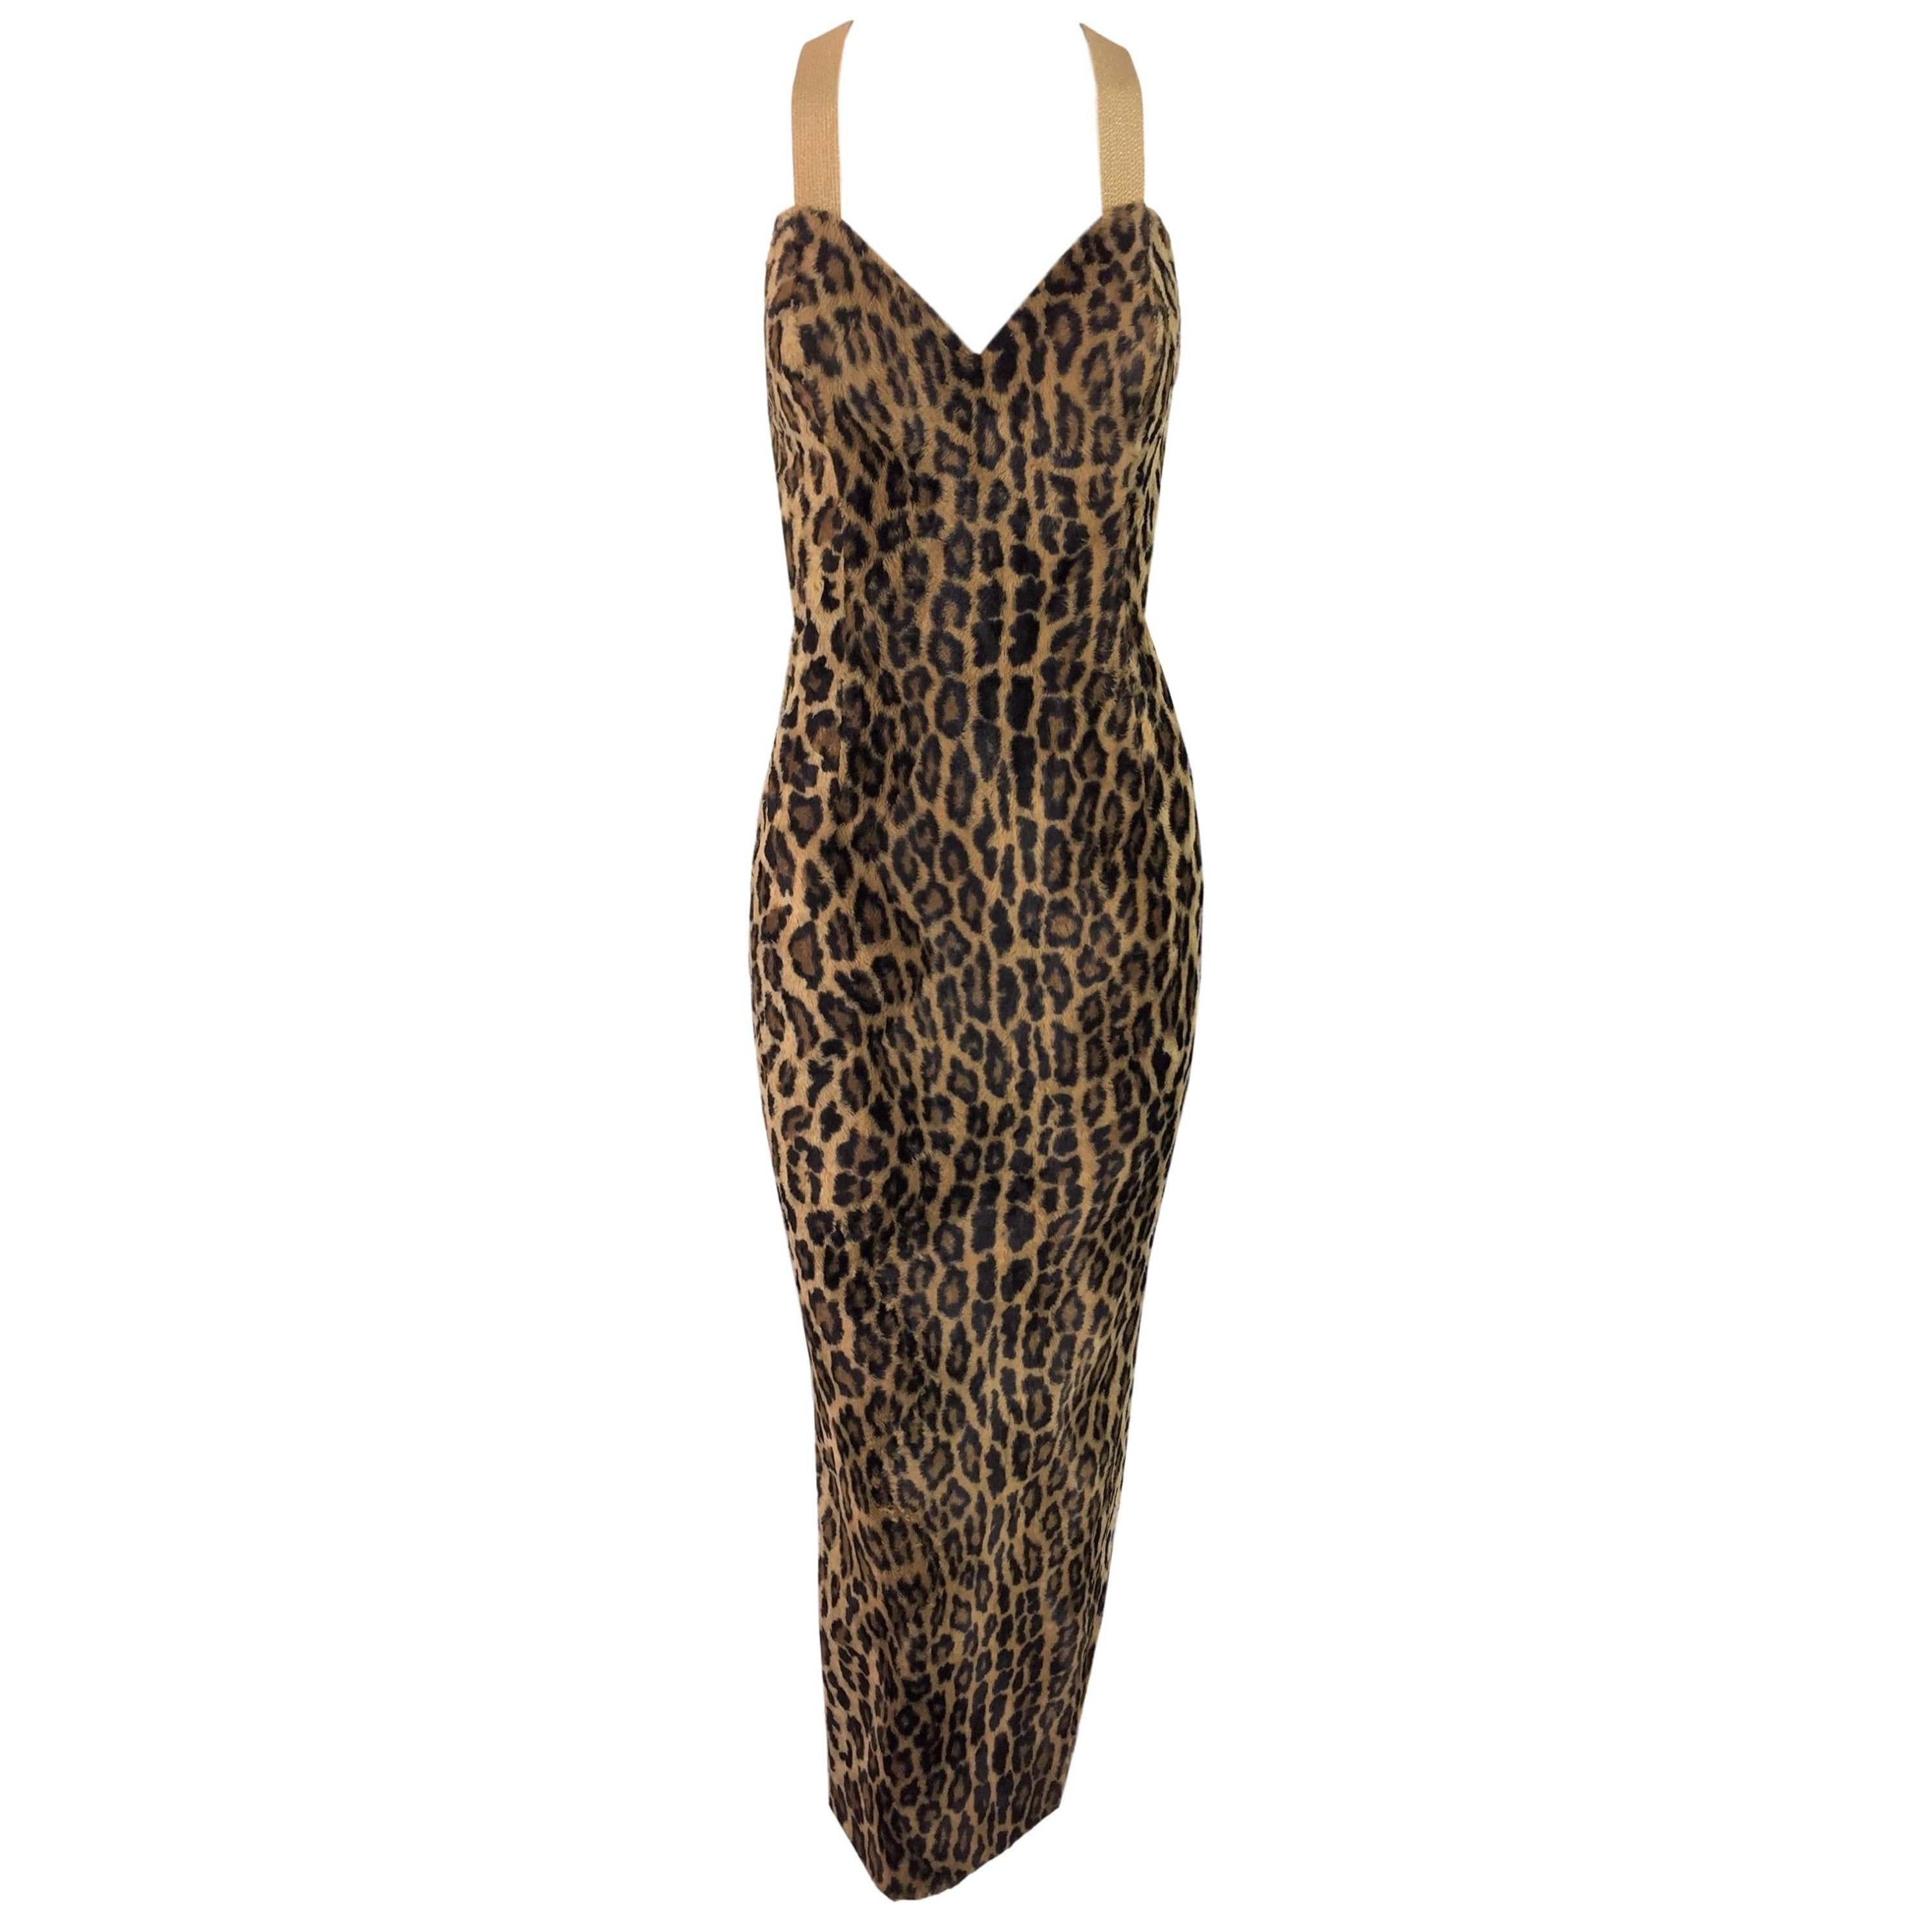 F/W 1994 Gianni Versace Faux Fur Leopard Gown Dress Seen On Fran Drescher 38